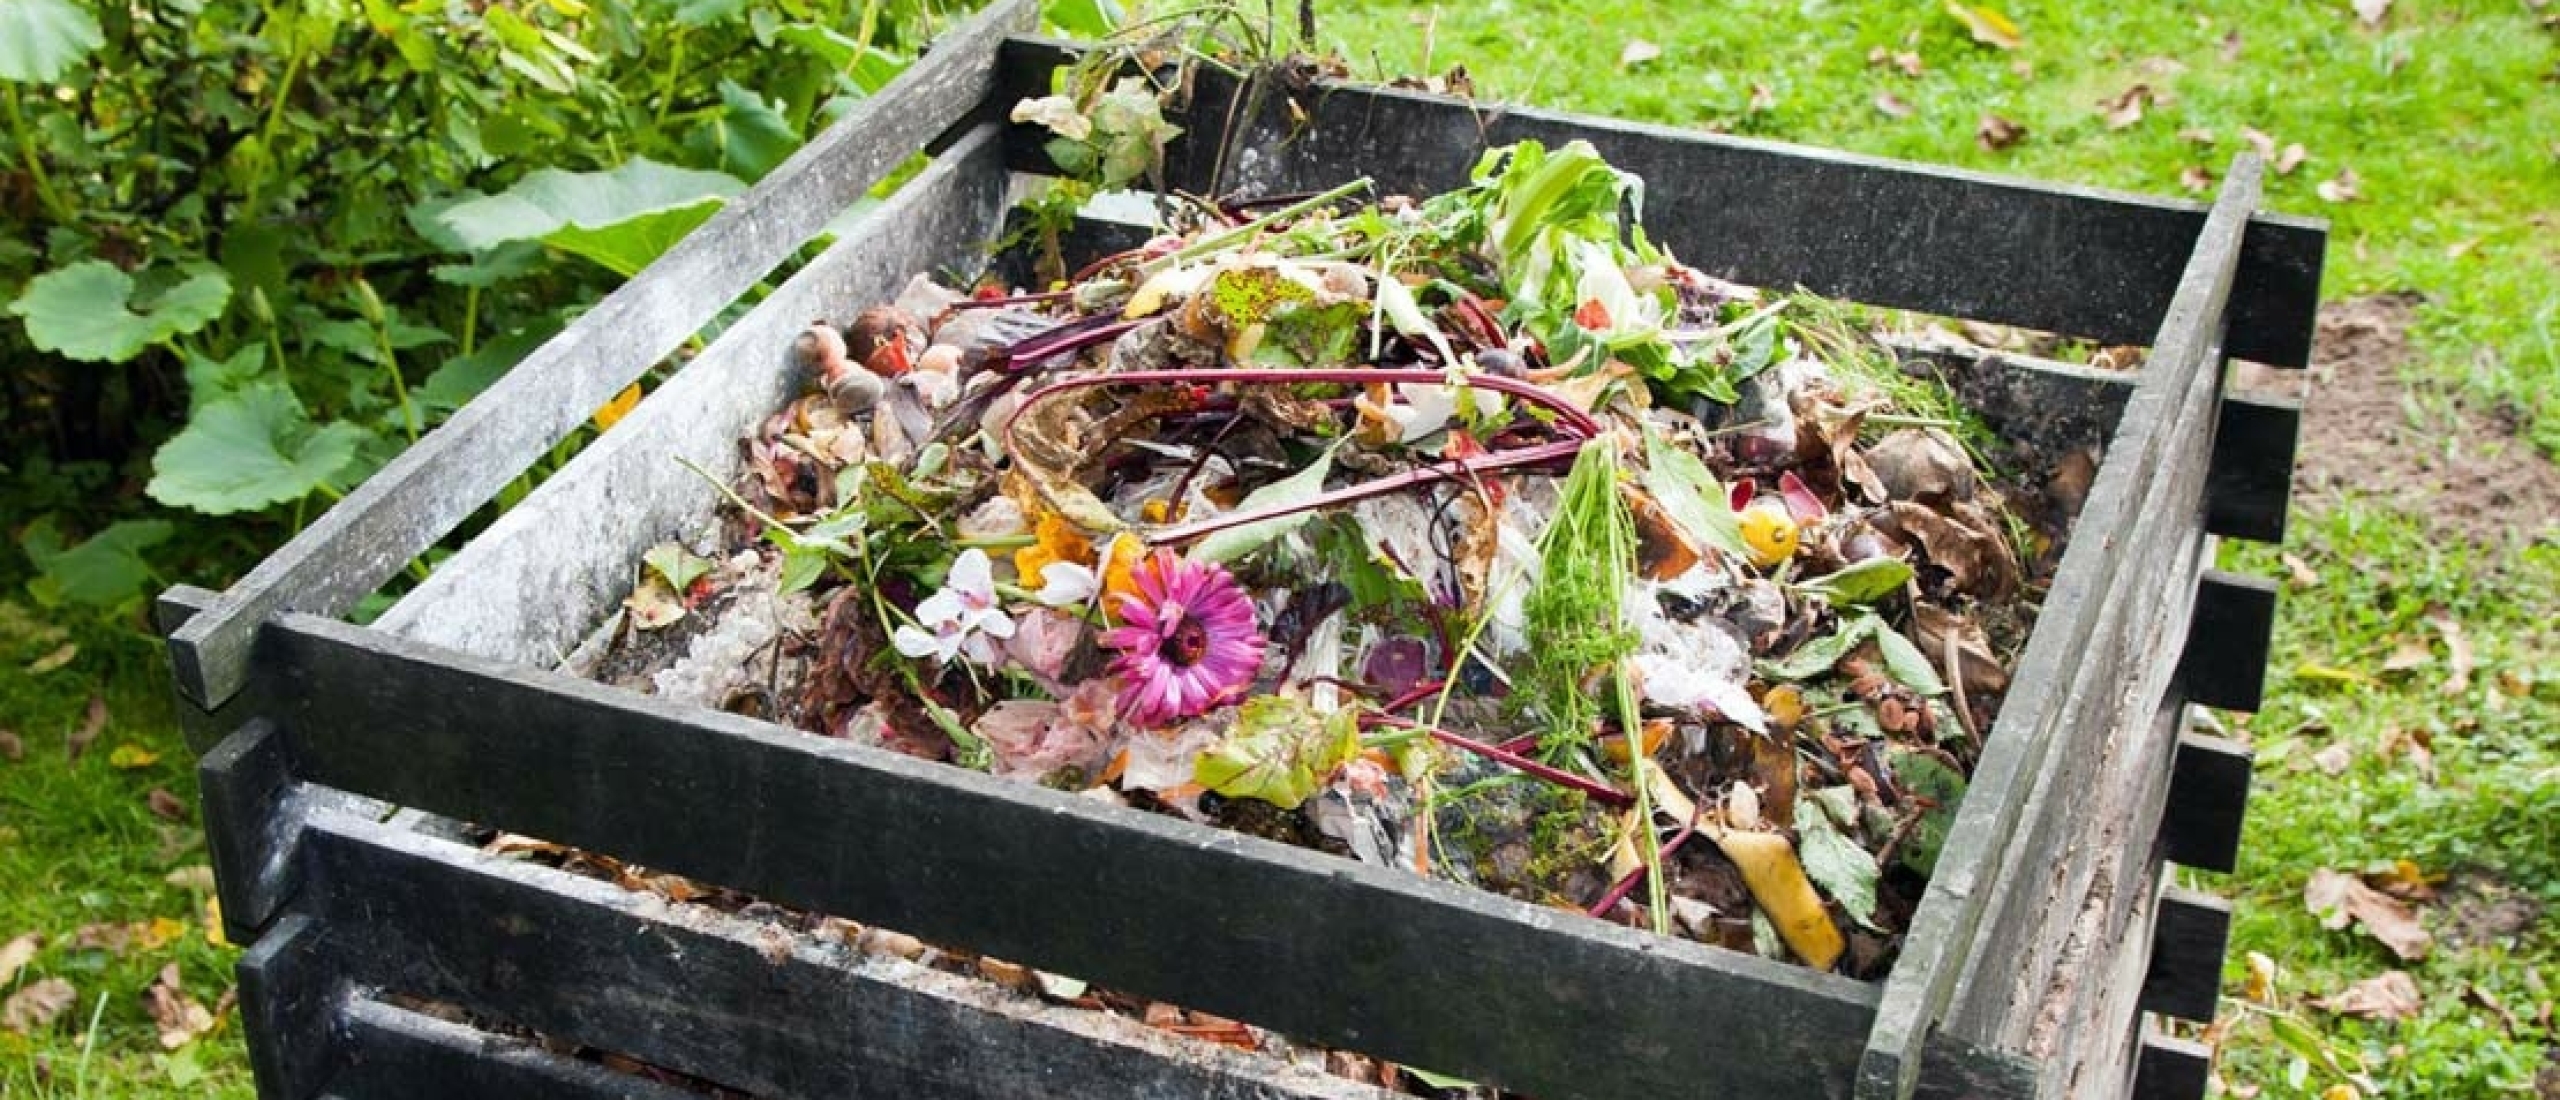 Wanneer & waarom compost gebruiken?